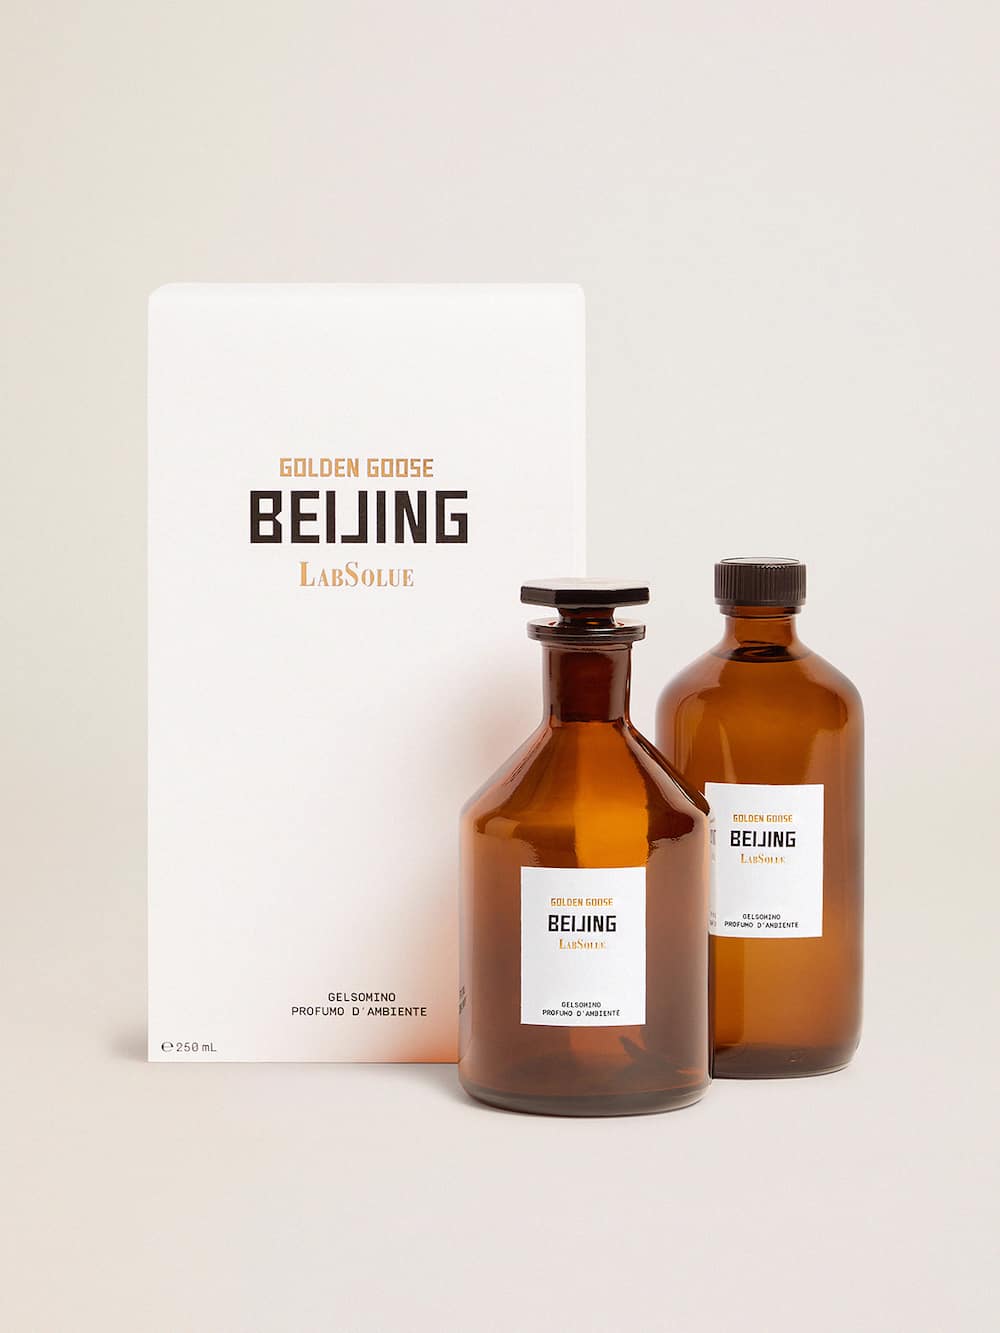 Golden Goose - Beijing Essence jasmin parfum d’ambiance 250 ml in 